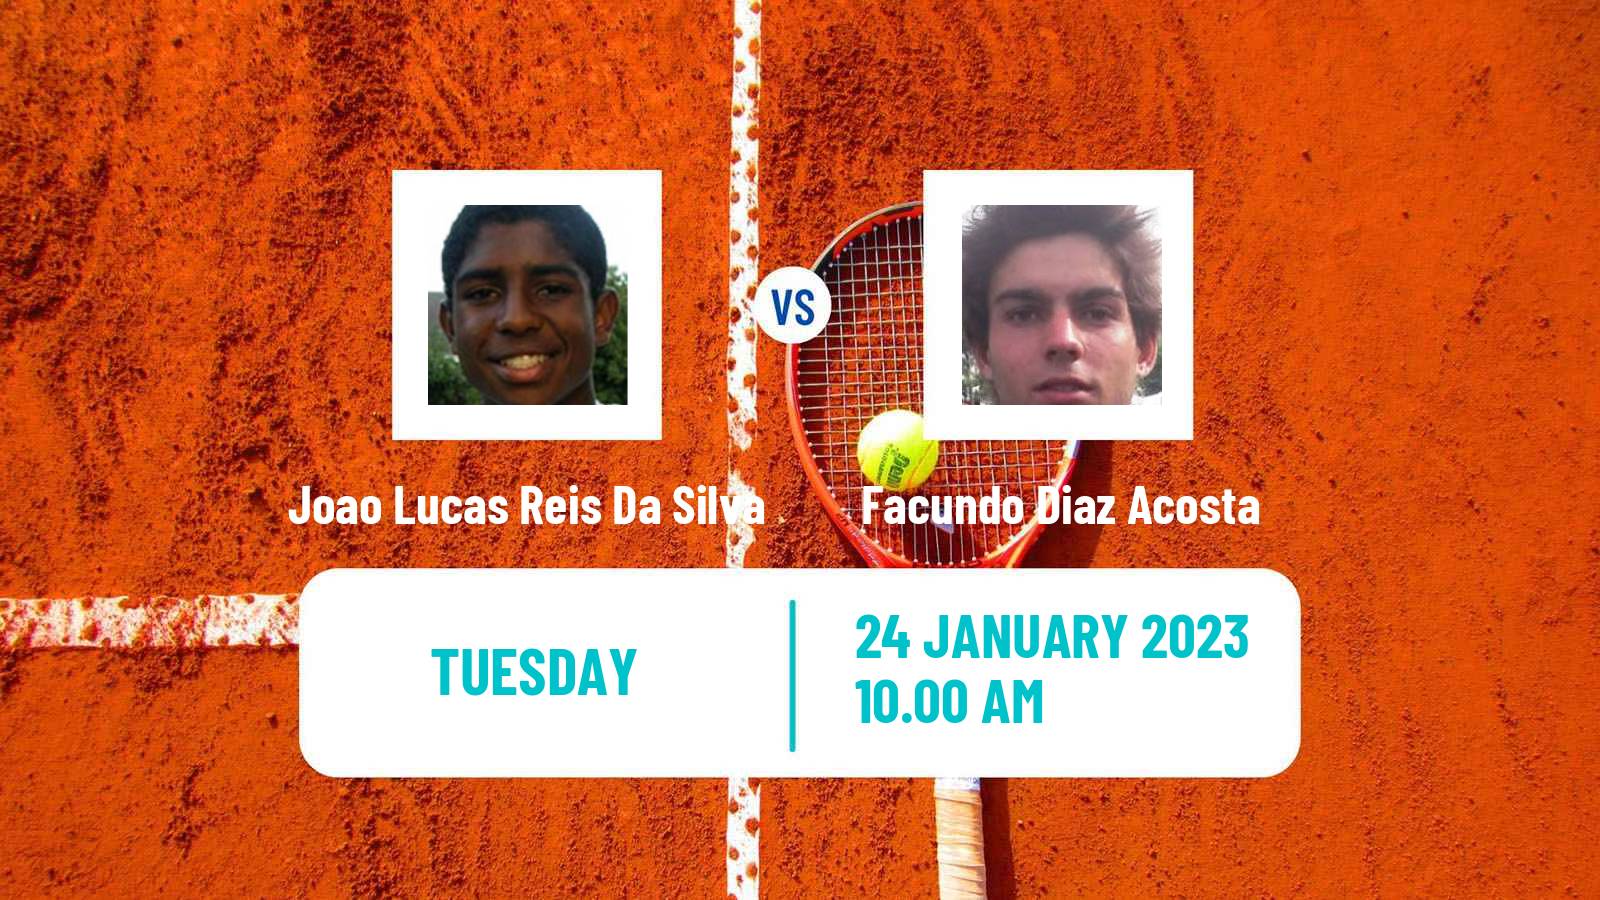 Tennis ATP Challenger Joao Lucas Reis Da Silva - Facundo Diaz Acosta